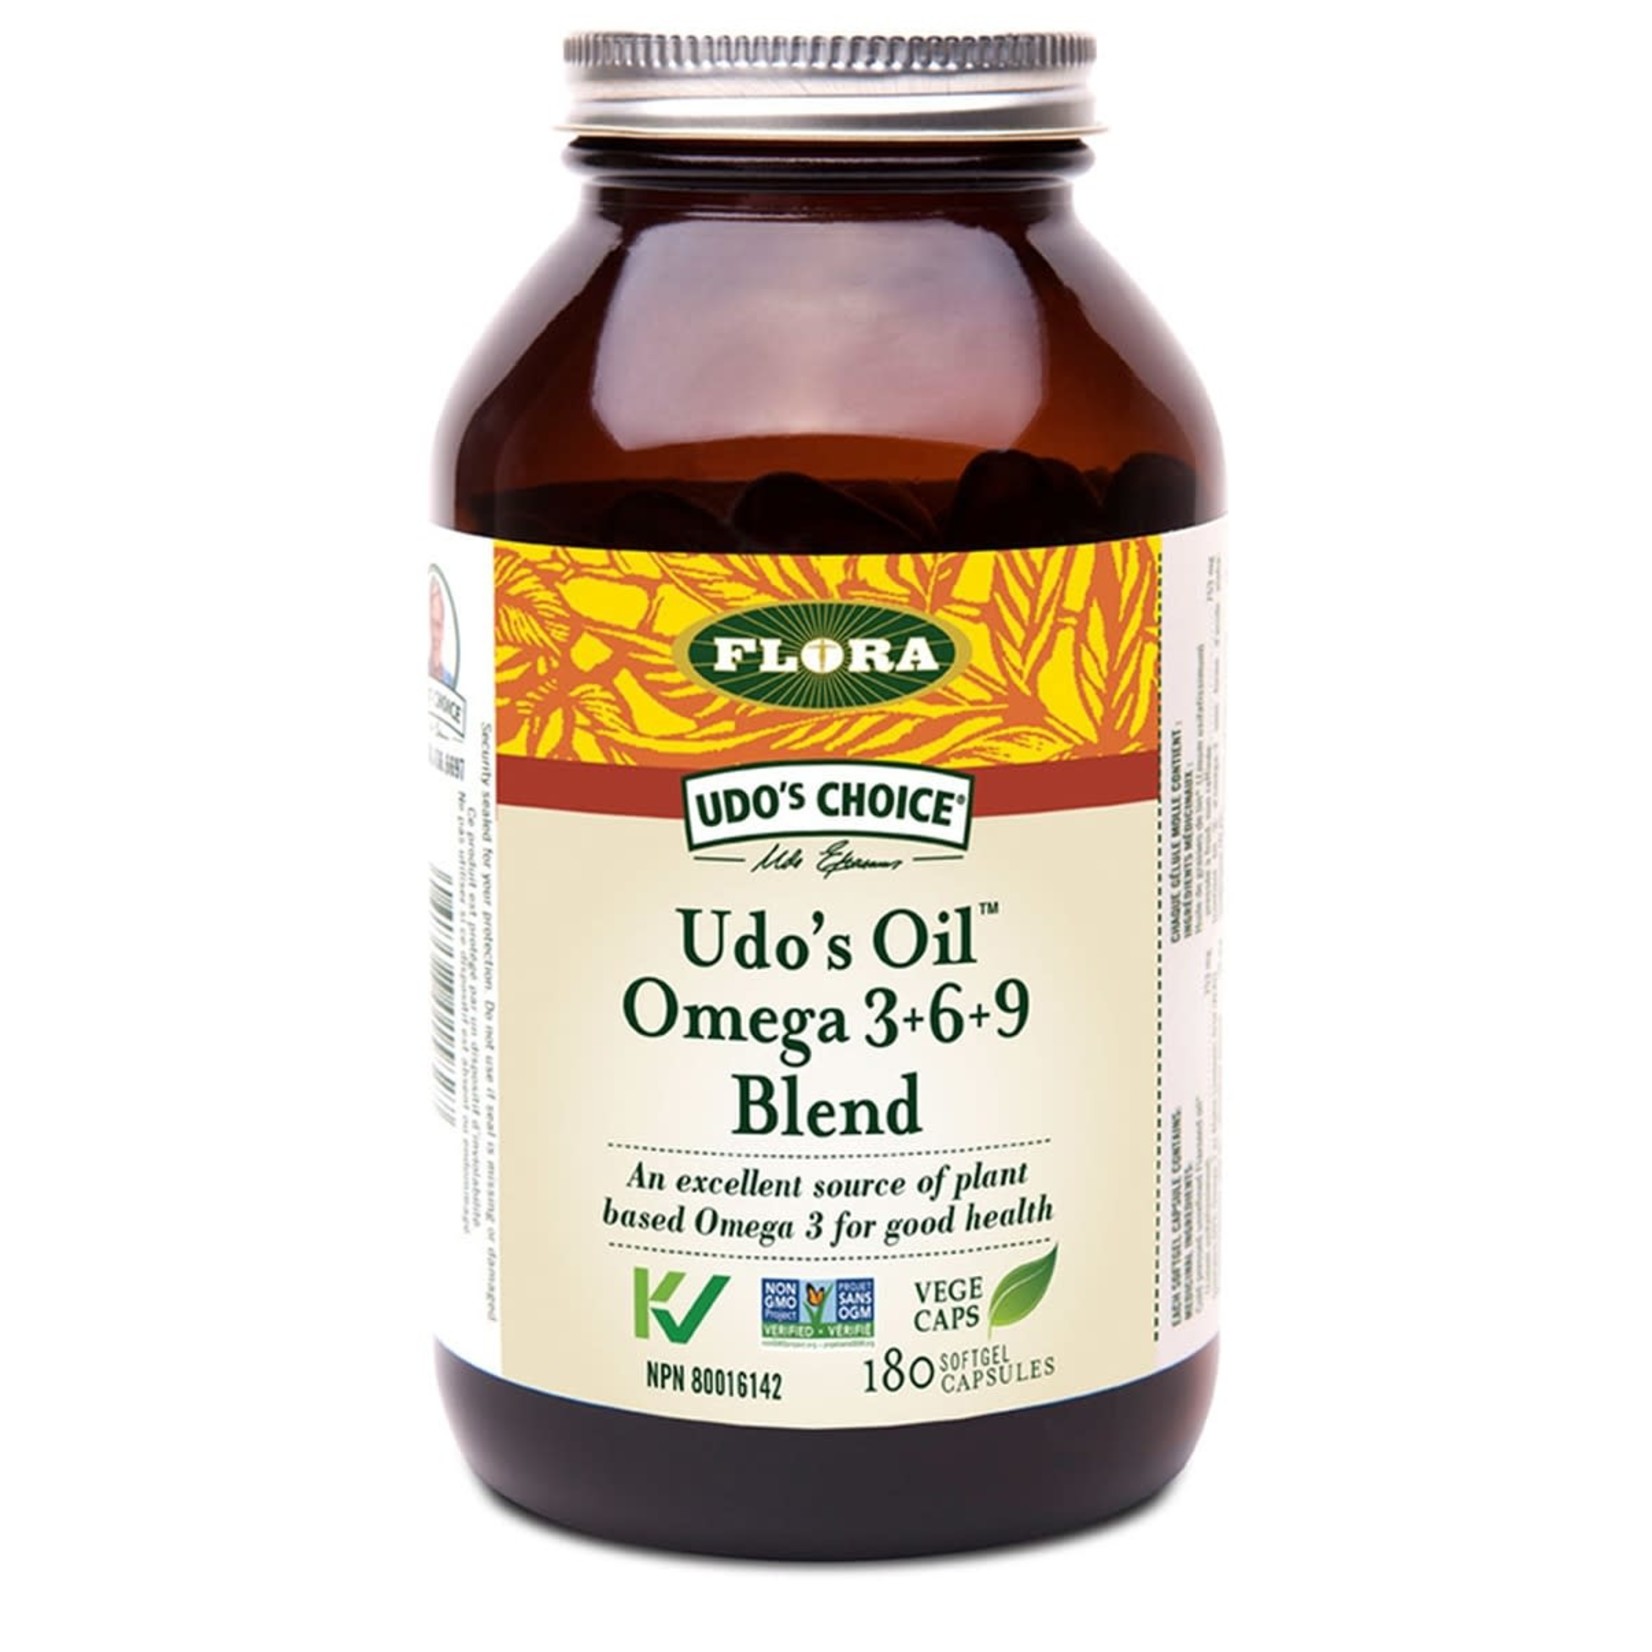 Flora Flora Udo’s Oil Omega 3+6+9 Blend 180 caps